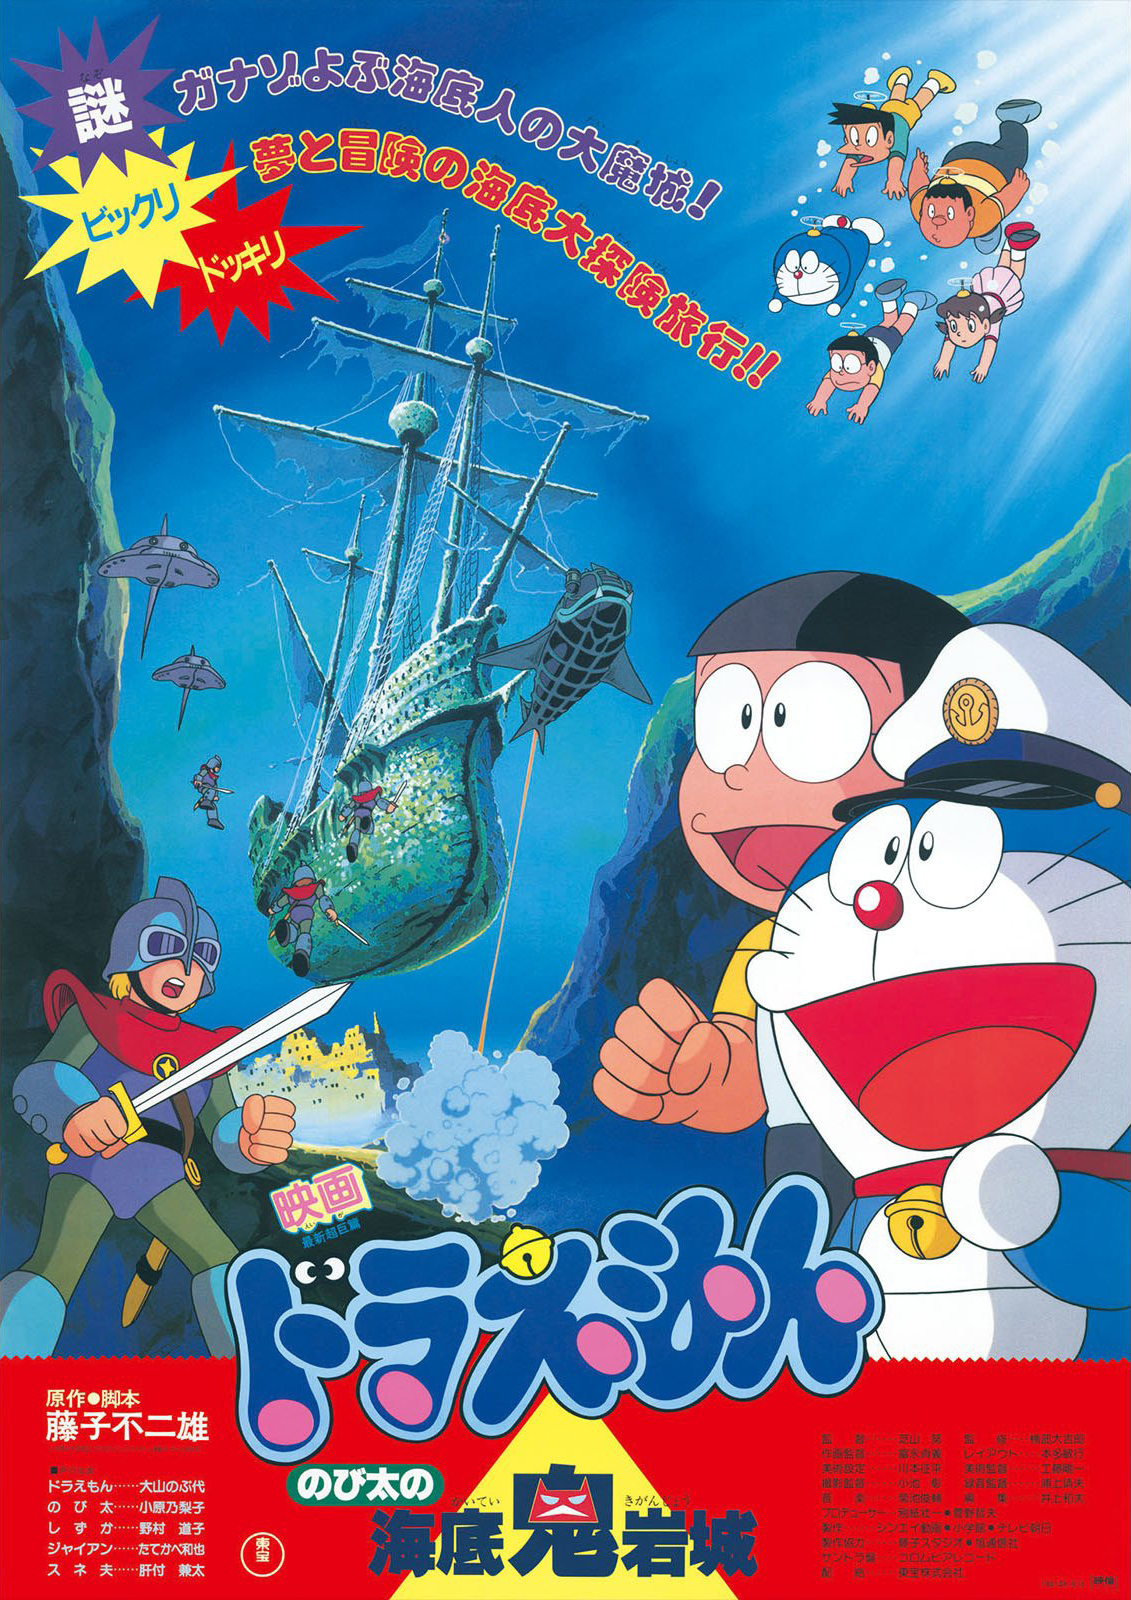 ดูหนังออนไลน์ฟรี Doraemon The Movie (1983) โดราเอมอนเดอะมูฟวี่ ตอน ตะลุยปราสาทใต้สมุทร